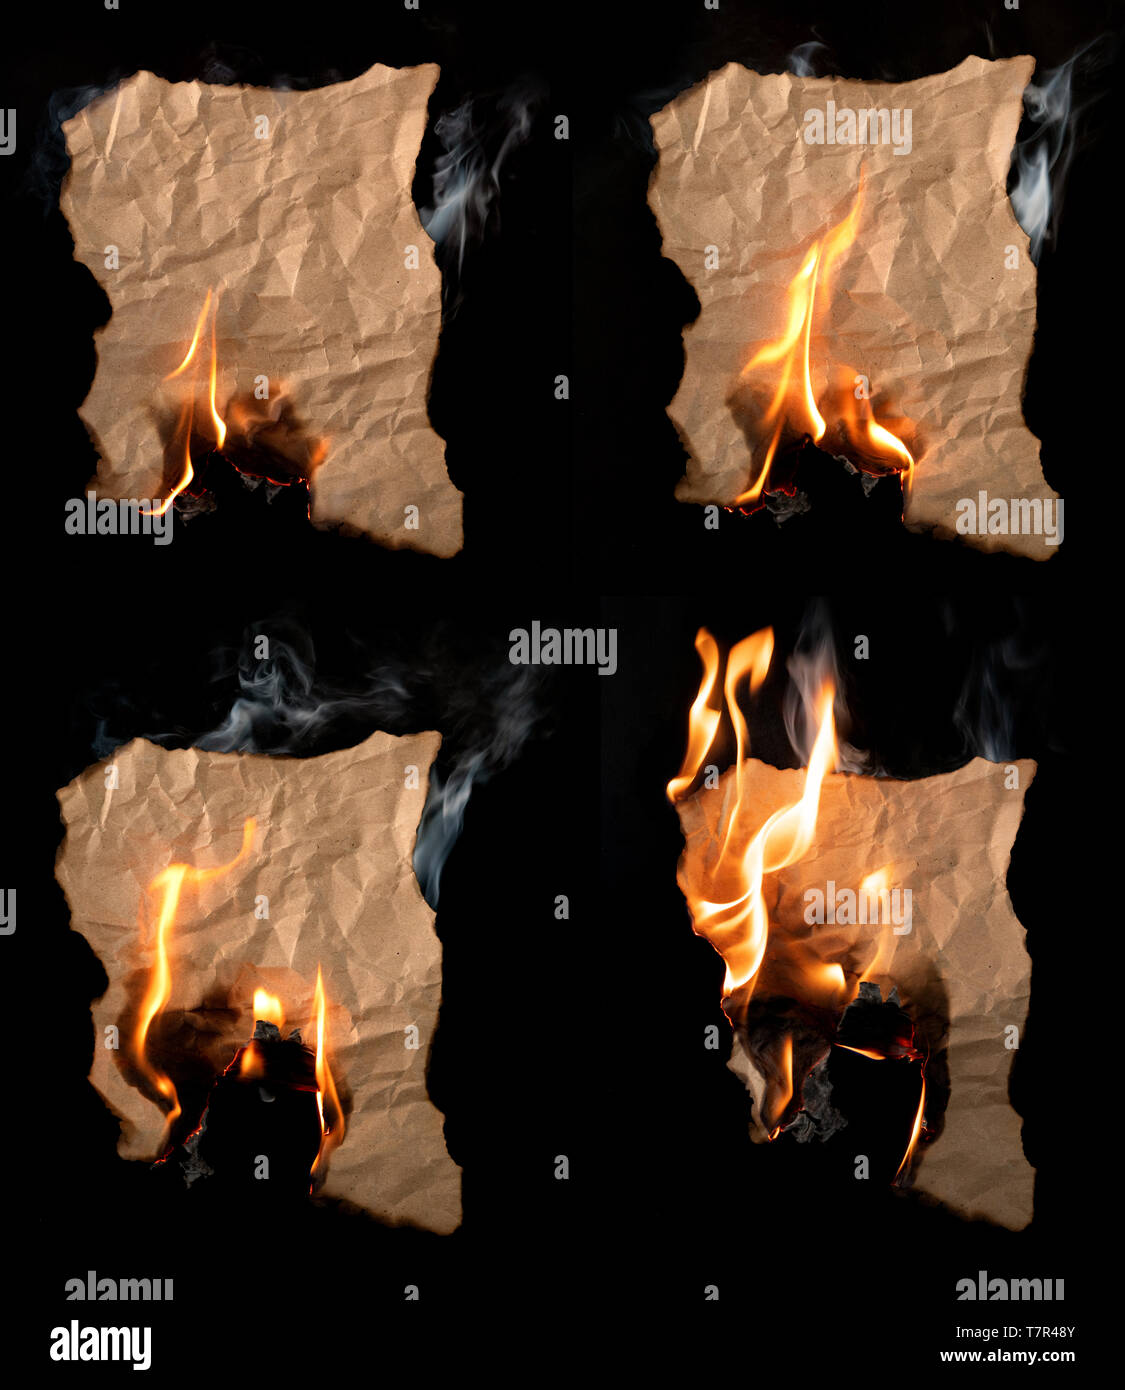 Burning morceau de papier chiffonné sur fond noir Banque D'Images